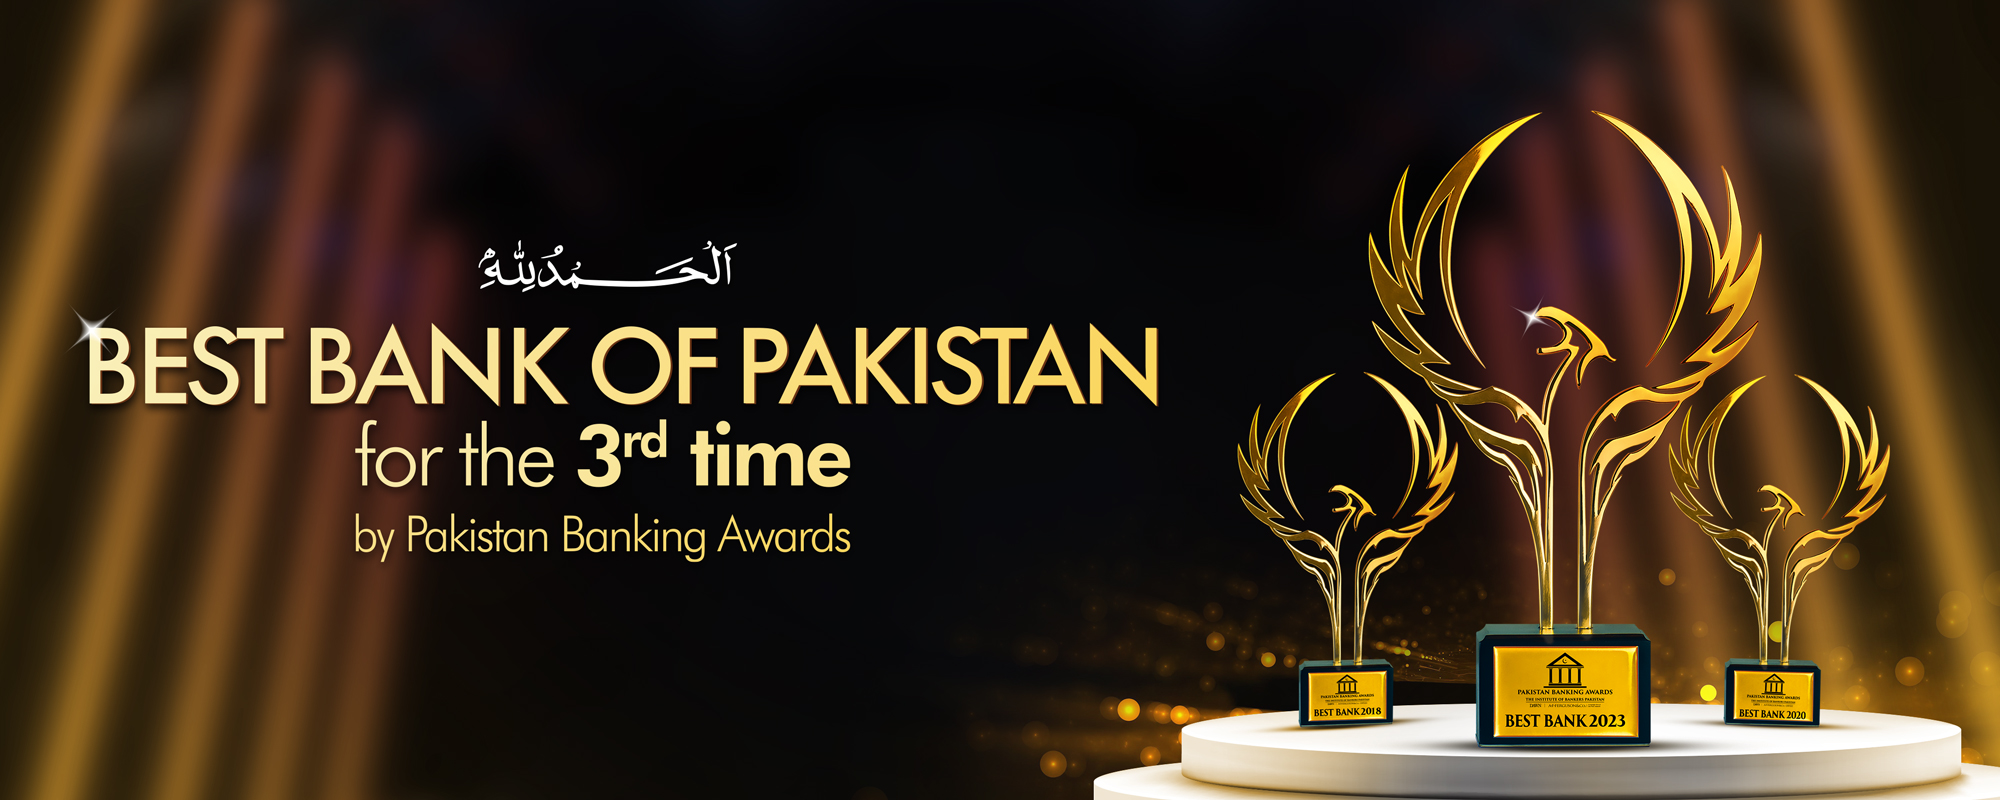 Best Bank of Pakistan 2023